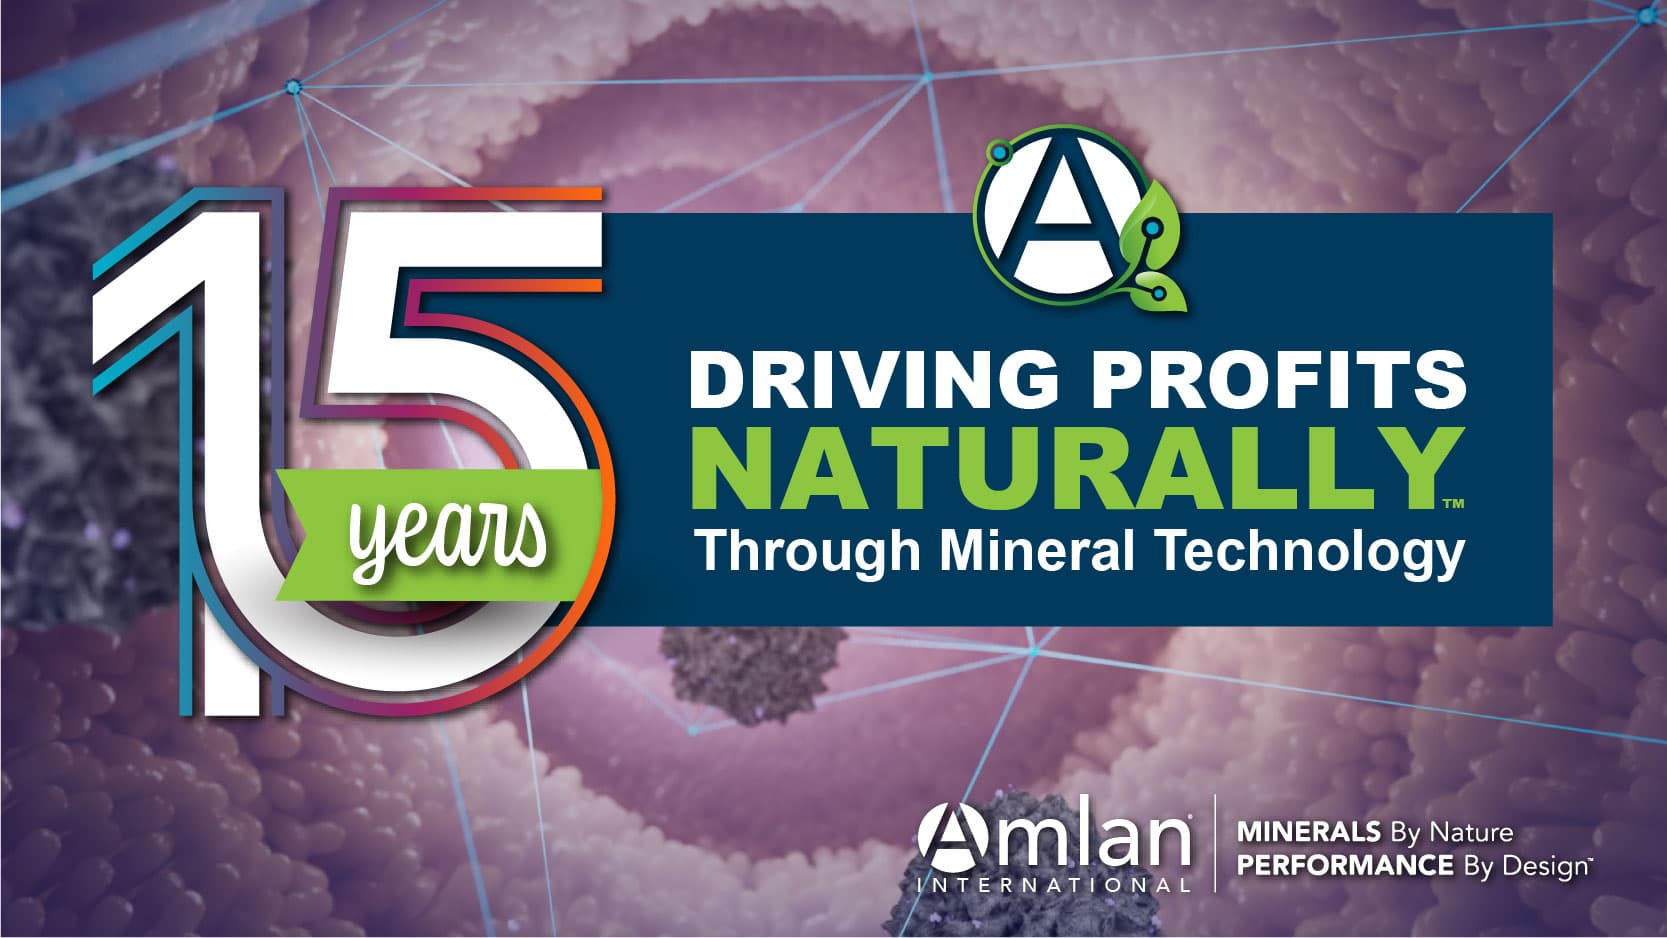 15 años generando beneficios de forma natural gracias a la tecnología minera.